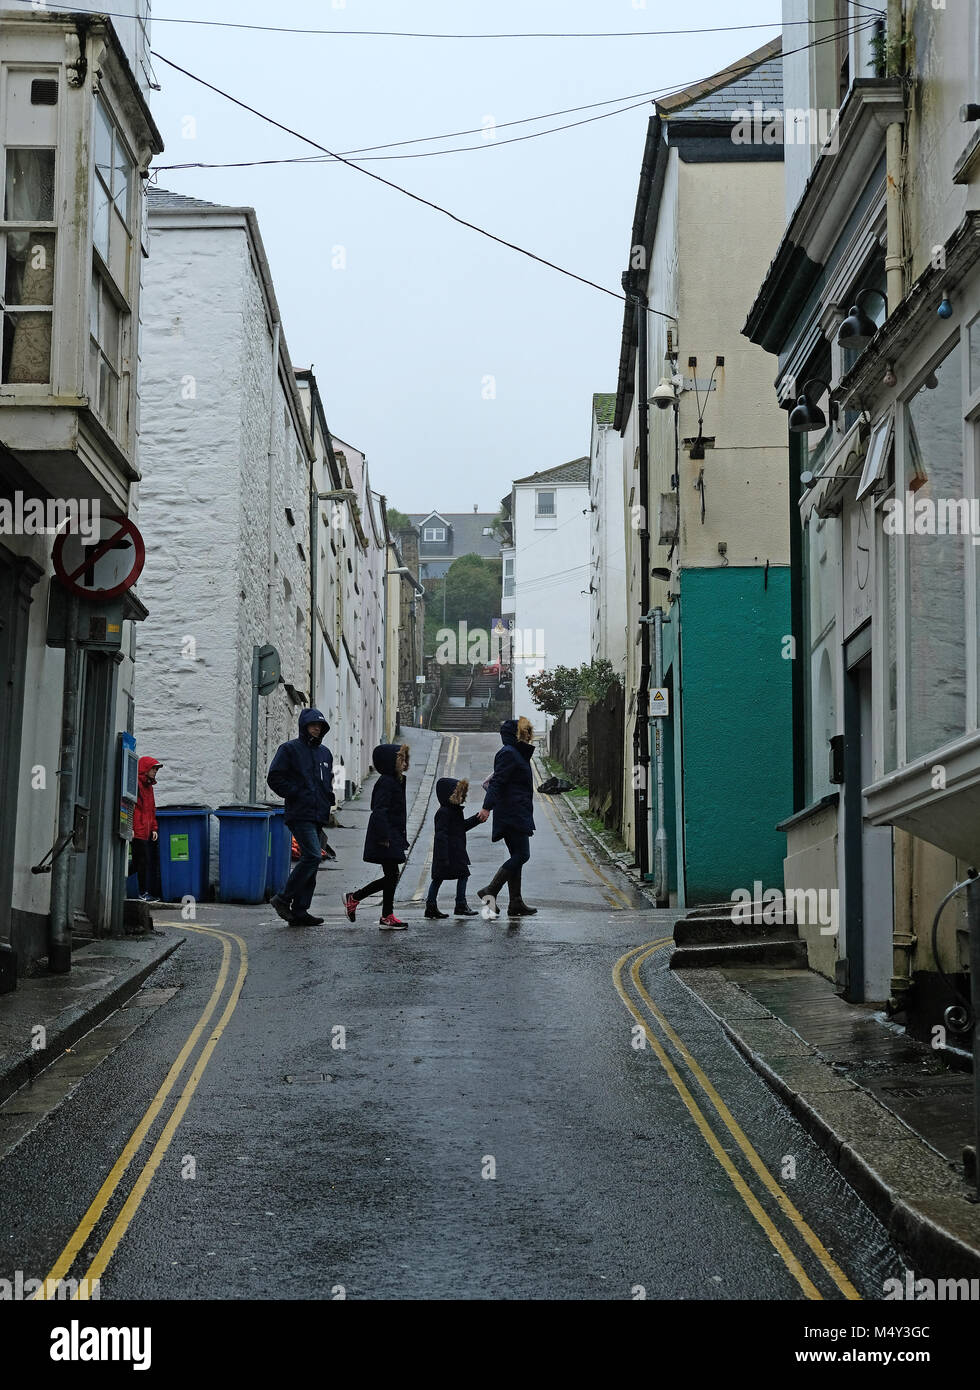 La gente a piedi attraverso una piovosa cittadina. Foto Stock